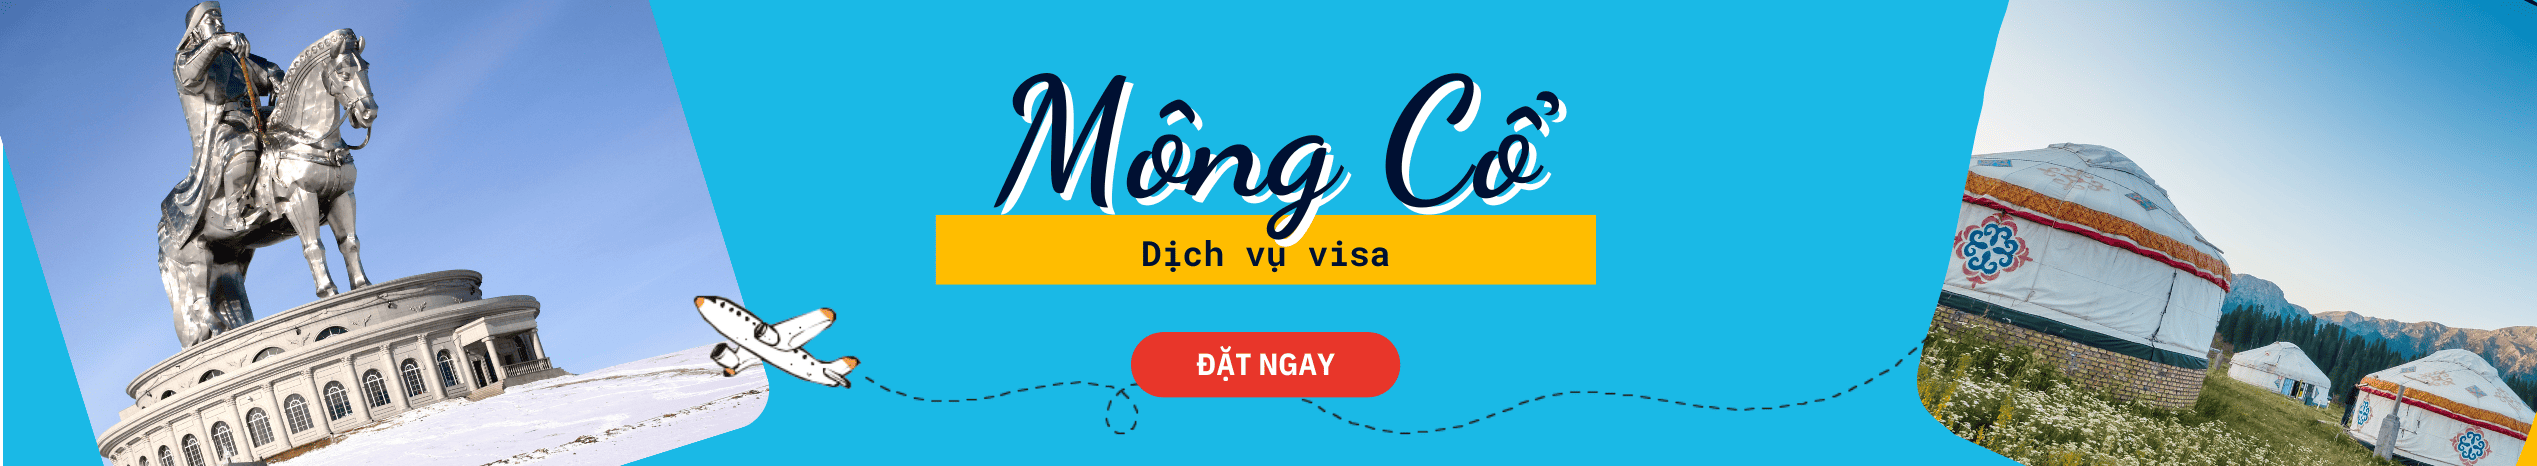 Dịch vụ hỗ trợ xin Visa Mông Cổ du lịch & dự sự kiện văn hóa, thể thao